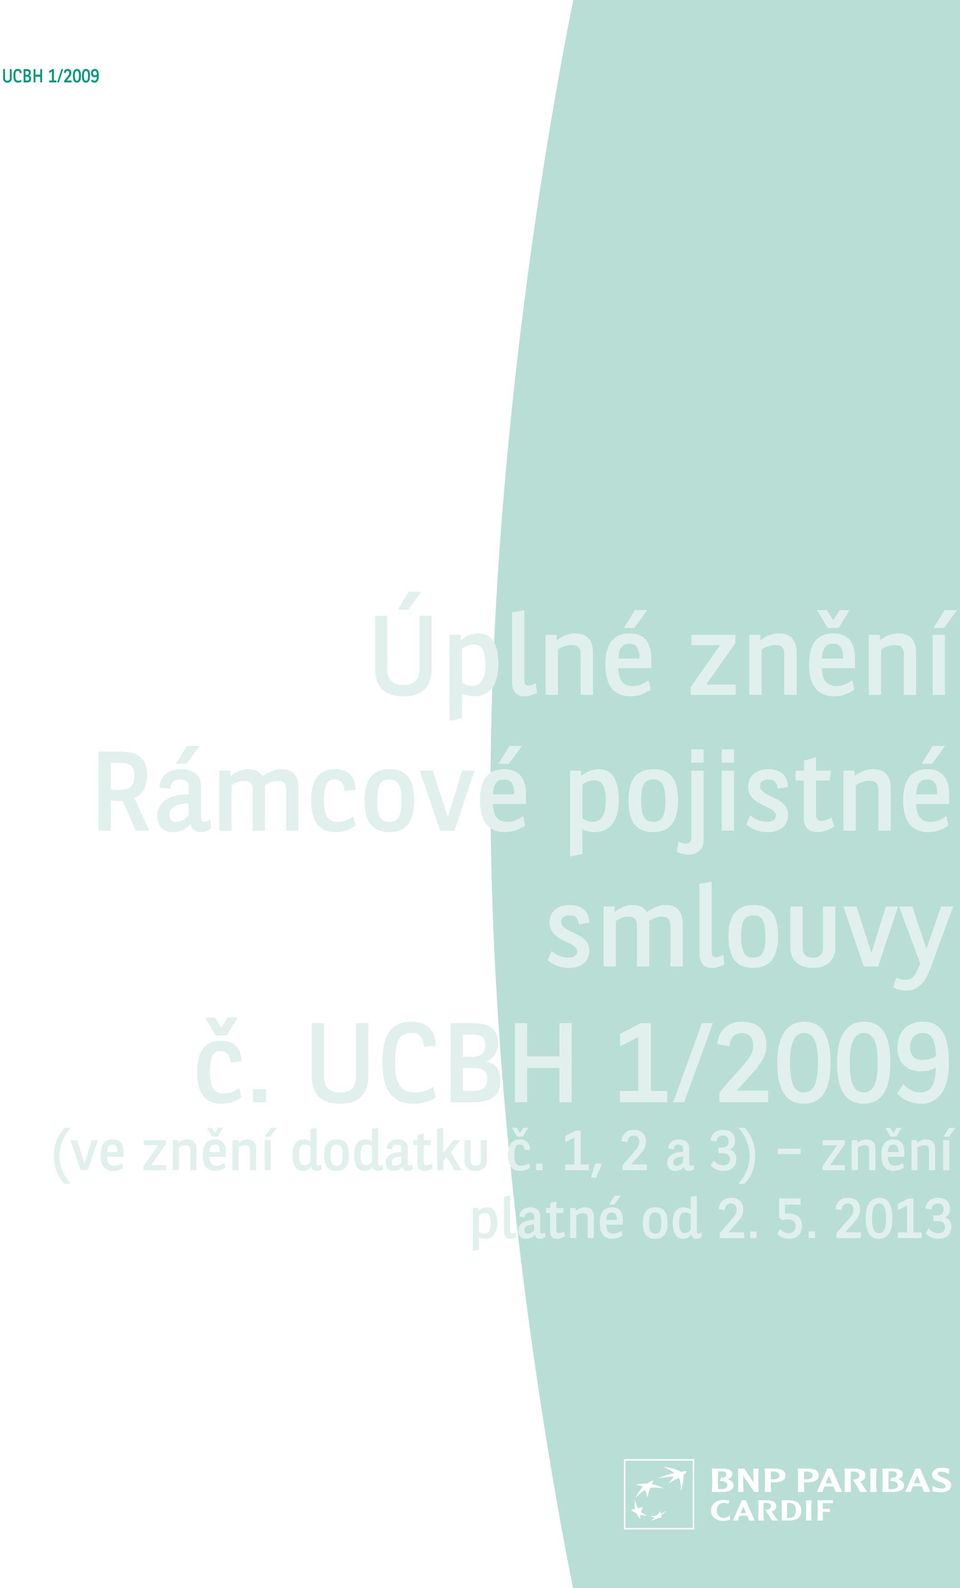 UCBH 1/2009 (ve znění dodatku